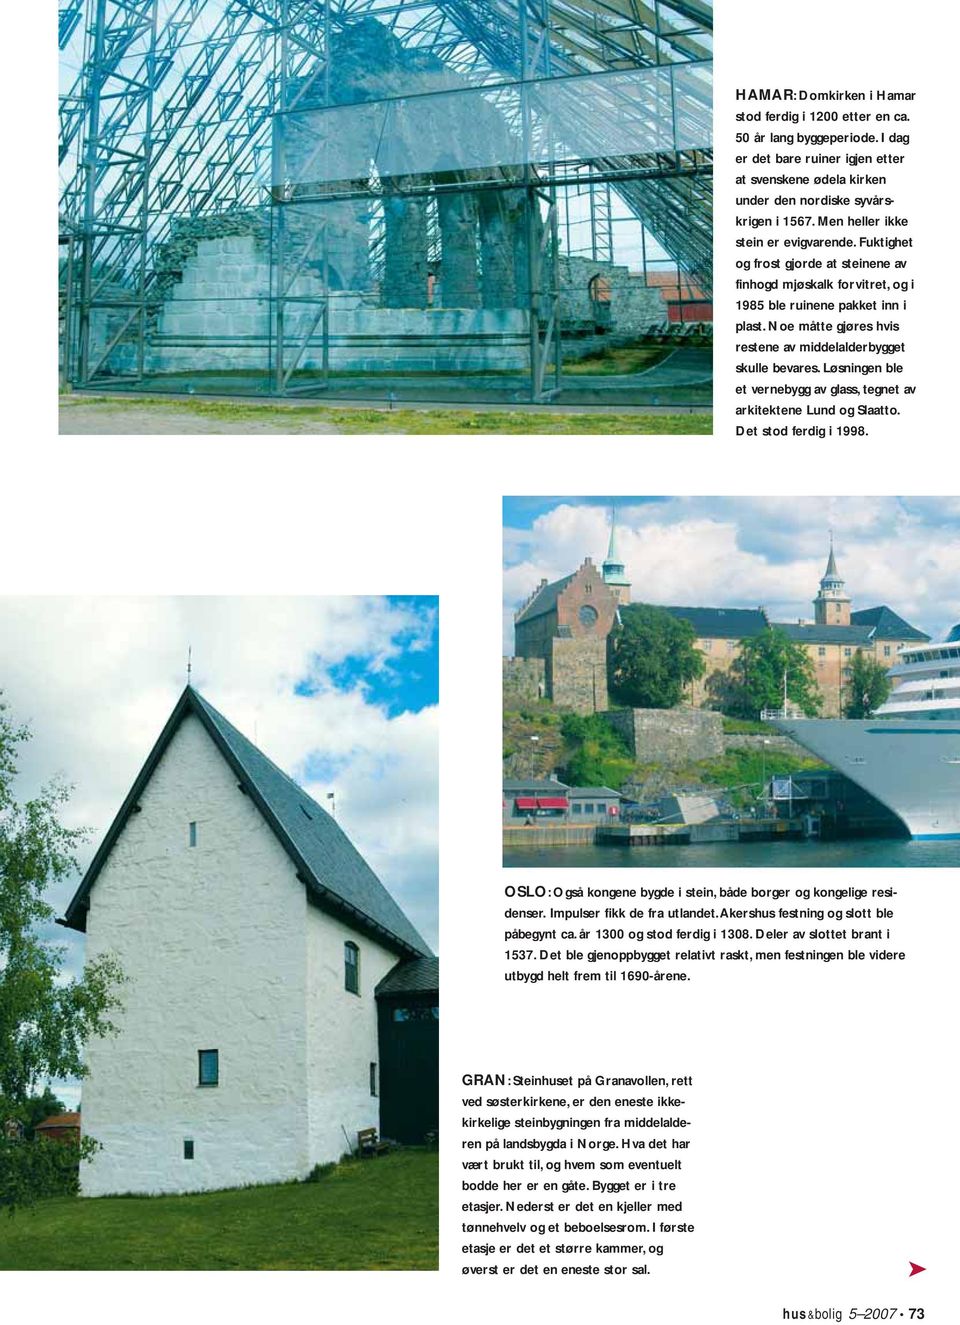 Noe måtte gjøres hvis restene av middelalderbygget skulle bevares. Løsningen ble et vernebygg av glass, tegnet av arkitektene Lund og Slaatto. Det stod ferdig i 1998.